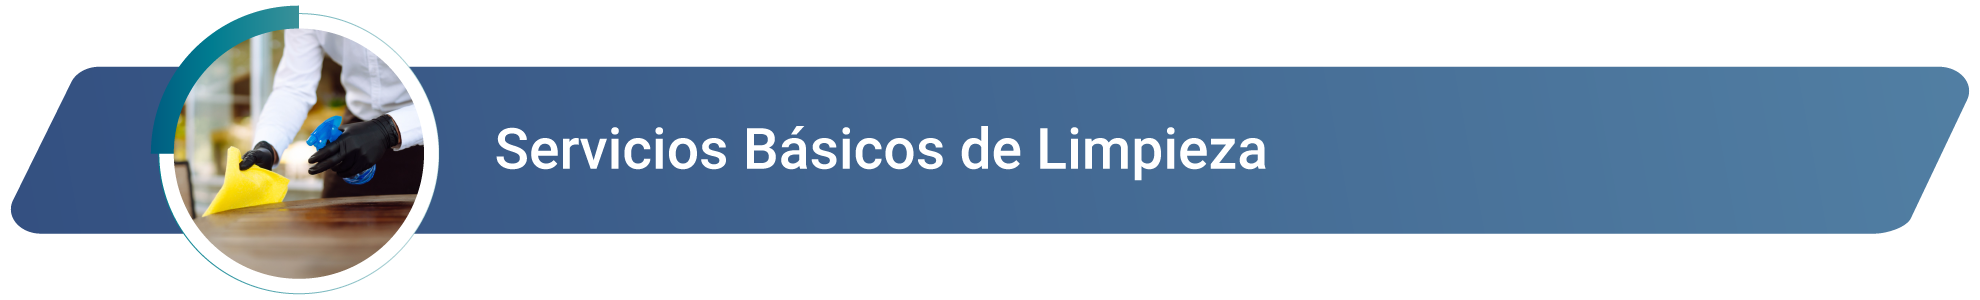 Servicios_basicos_limpieza